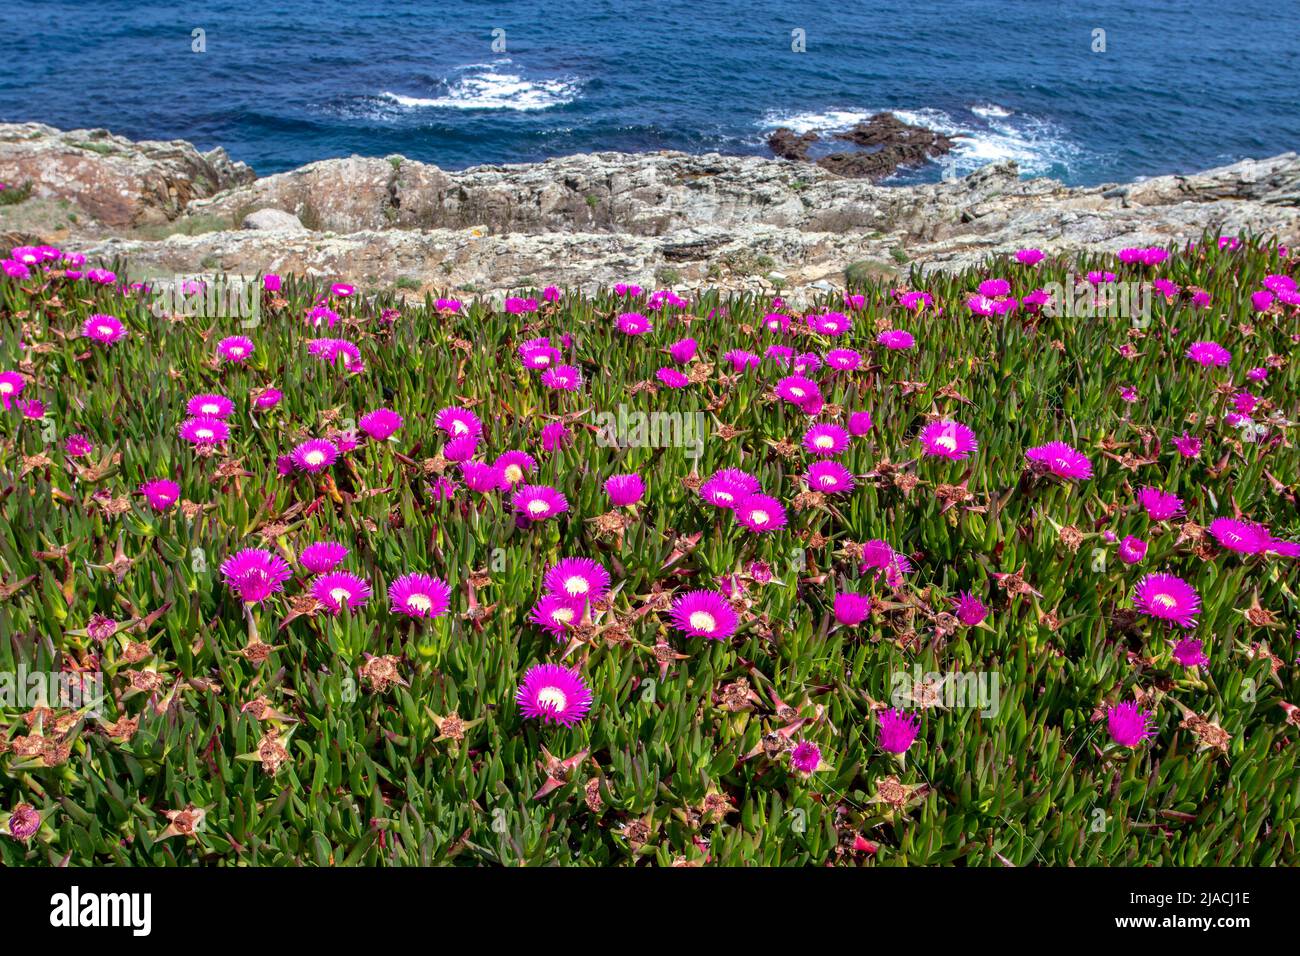 Pianta di ghiaccio o carpobrotus edulis o hottentot-fico o acidato o pianta di ghiaccio di strada con fiori rosa brillante sulla riva del mare in primavera Foto Stock